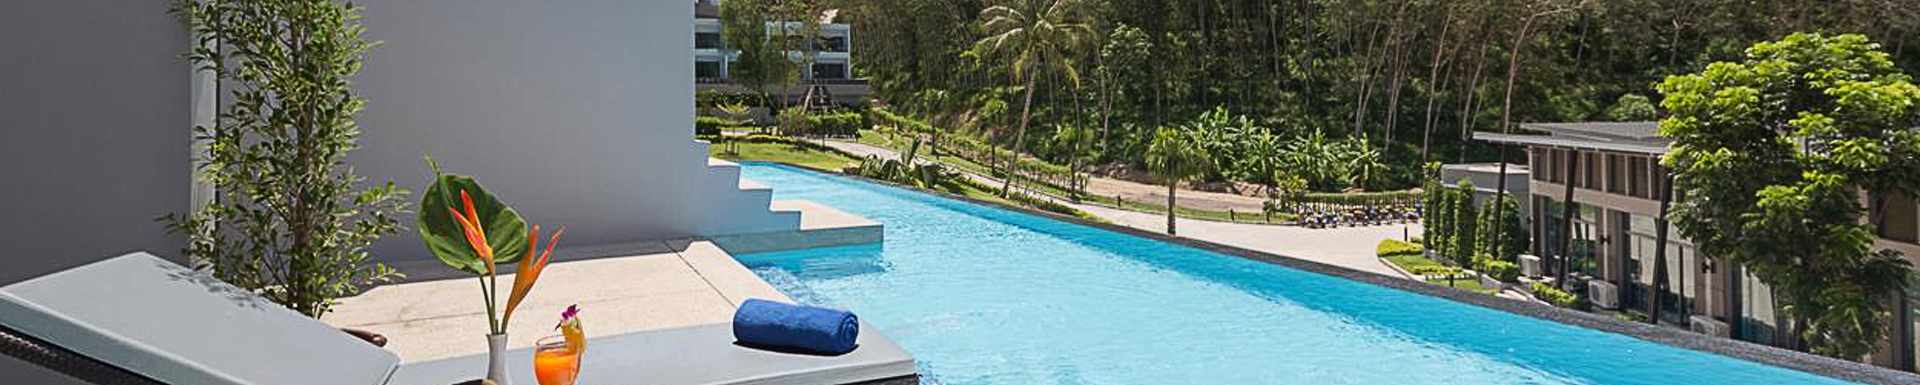 Patong Bay Hill Resort